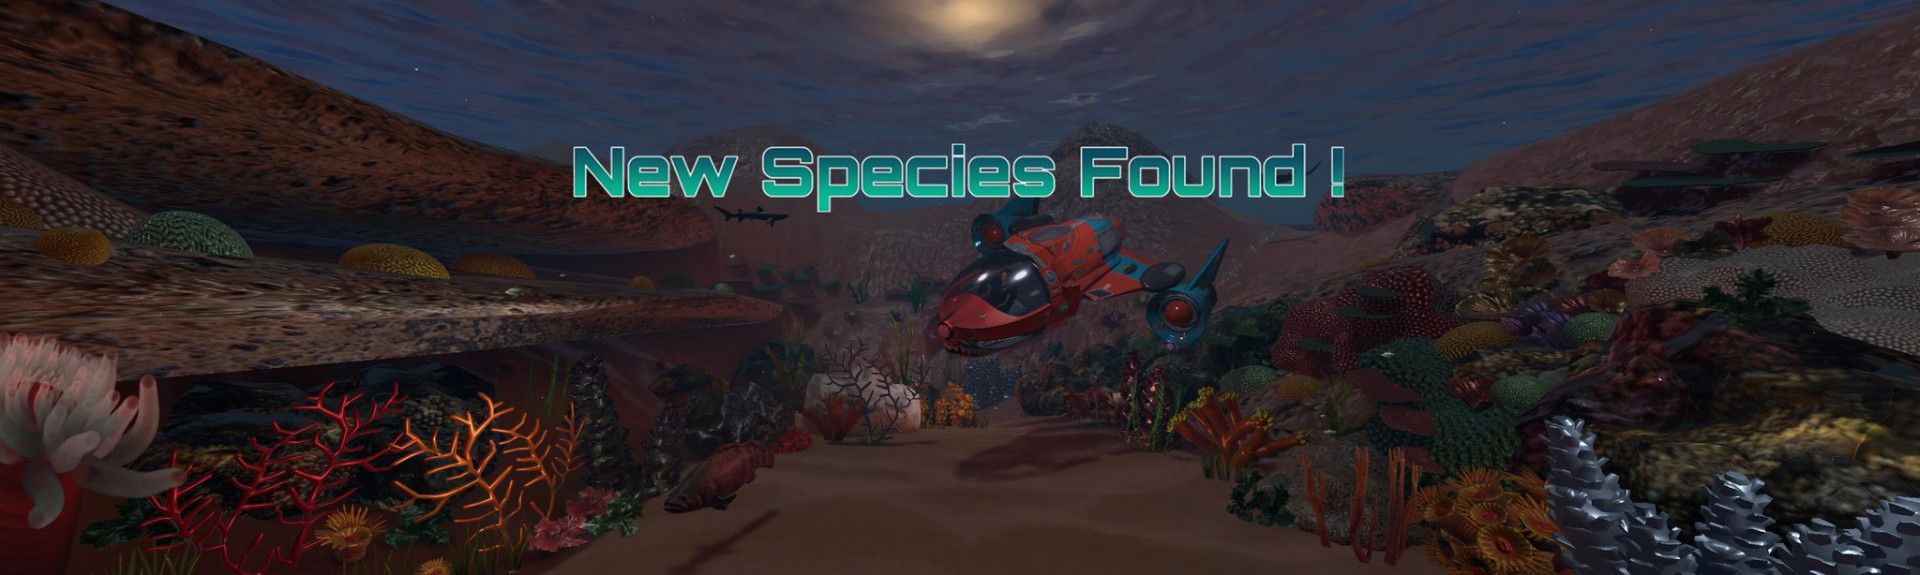 New Species Found